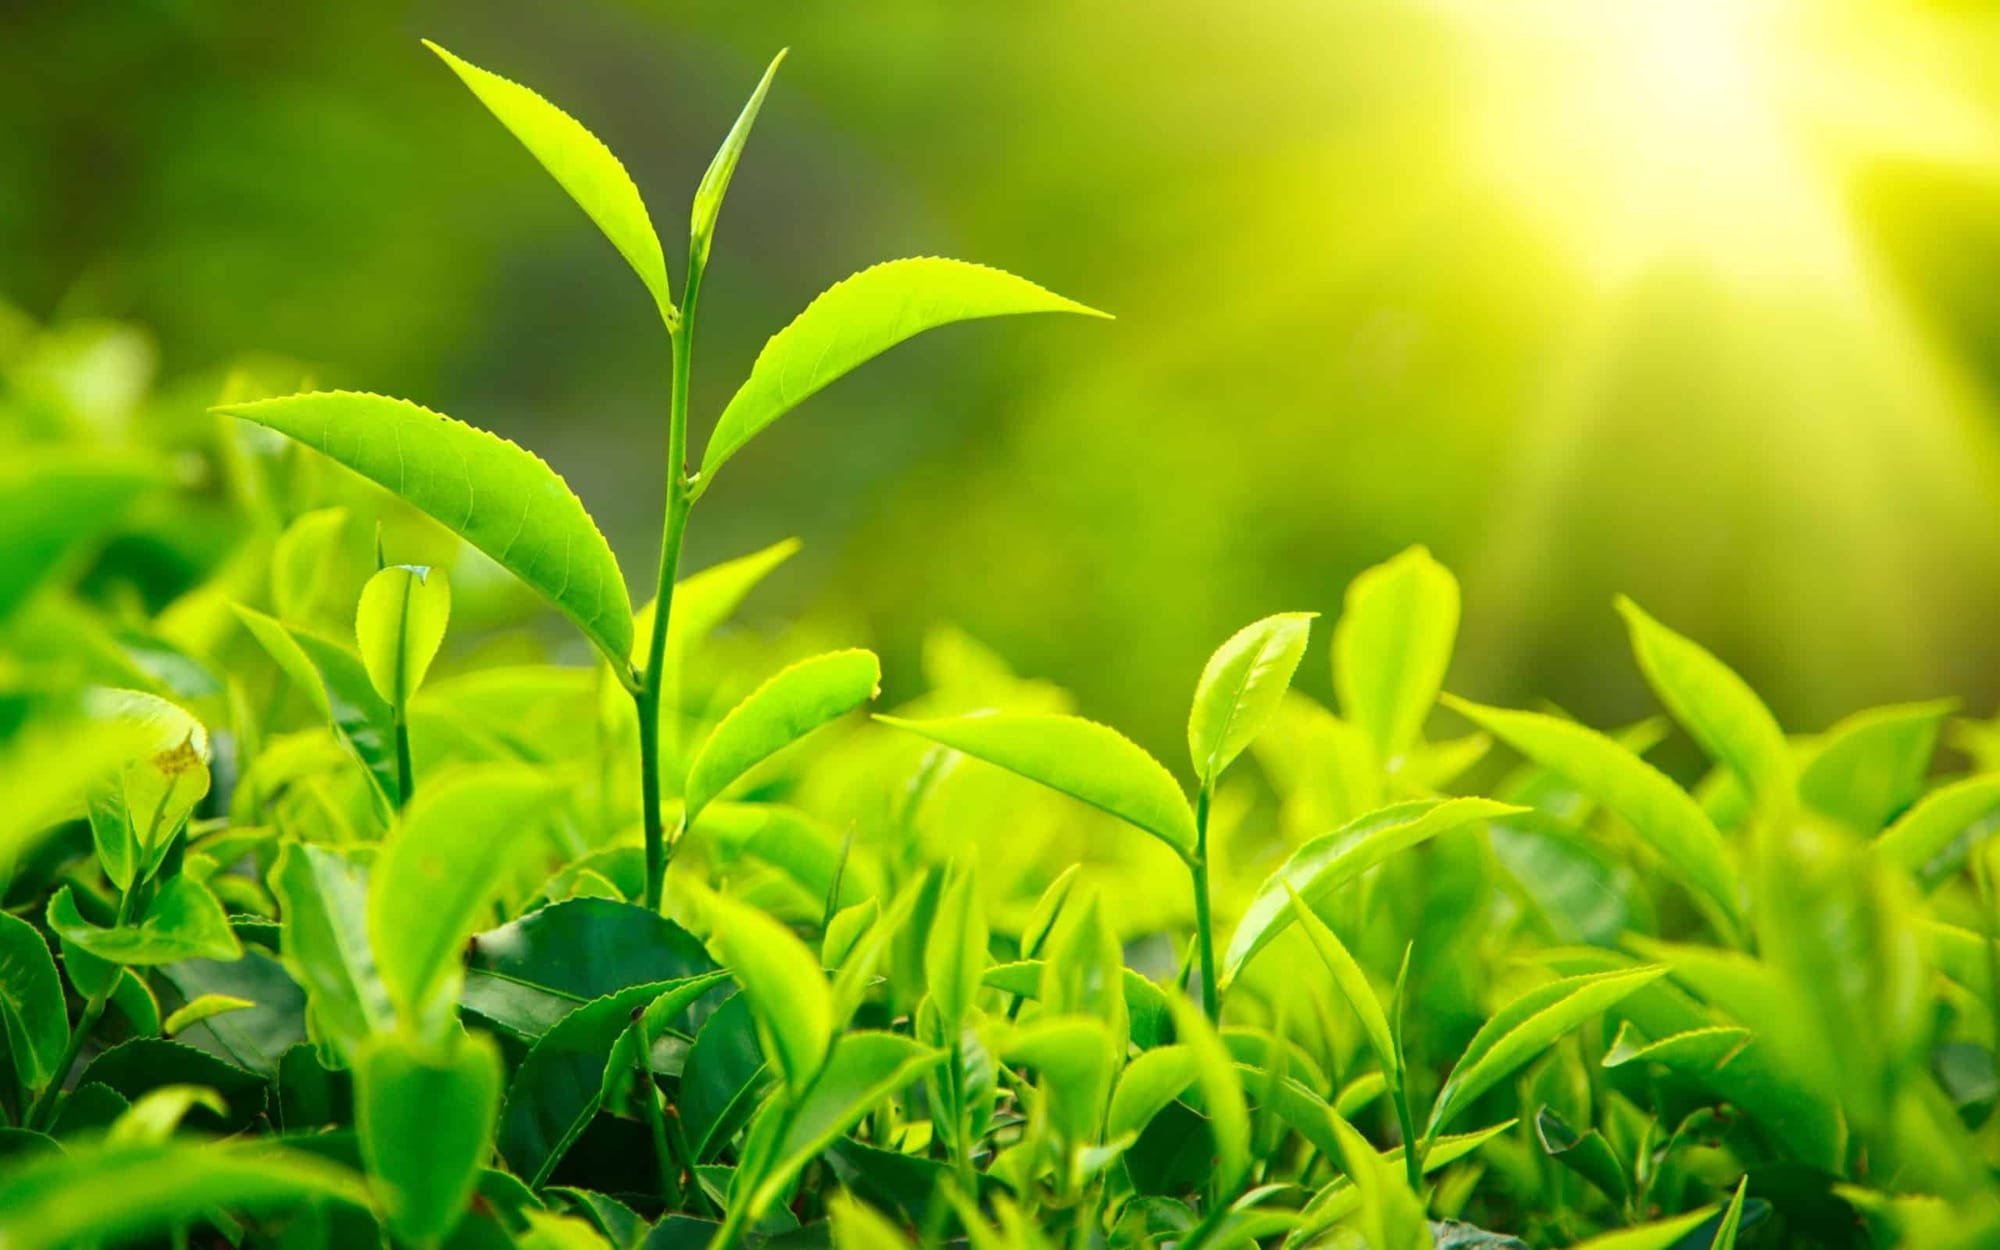 فوائد جديدة لمستخلصات الشاى الأخضر في علاج تشوهات متلازمة "داون"